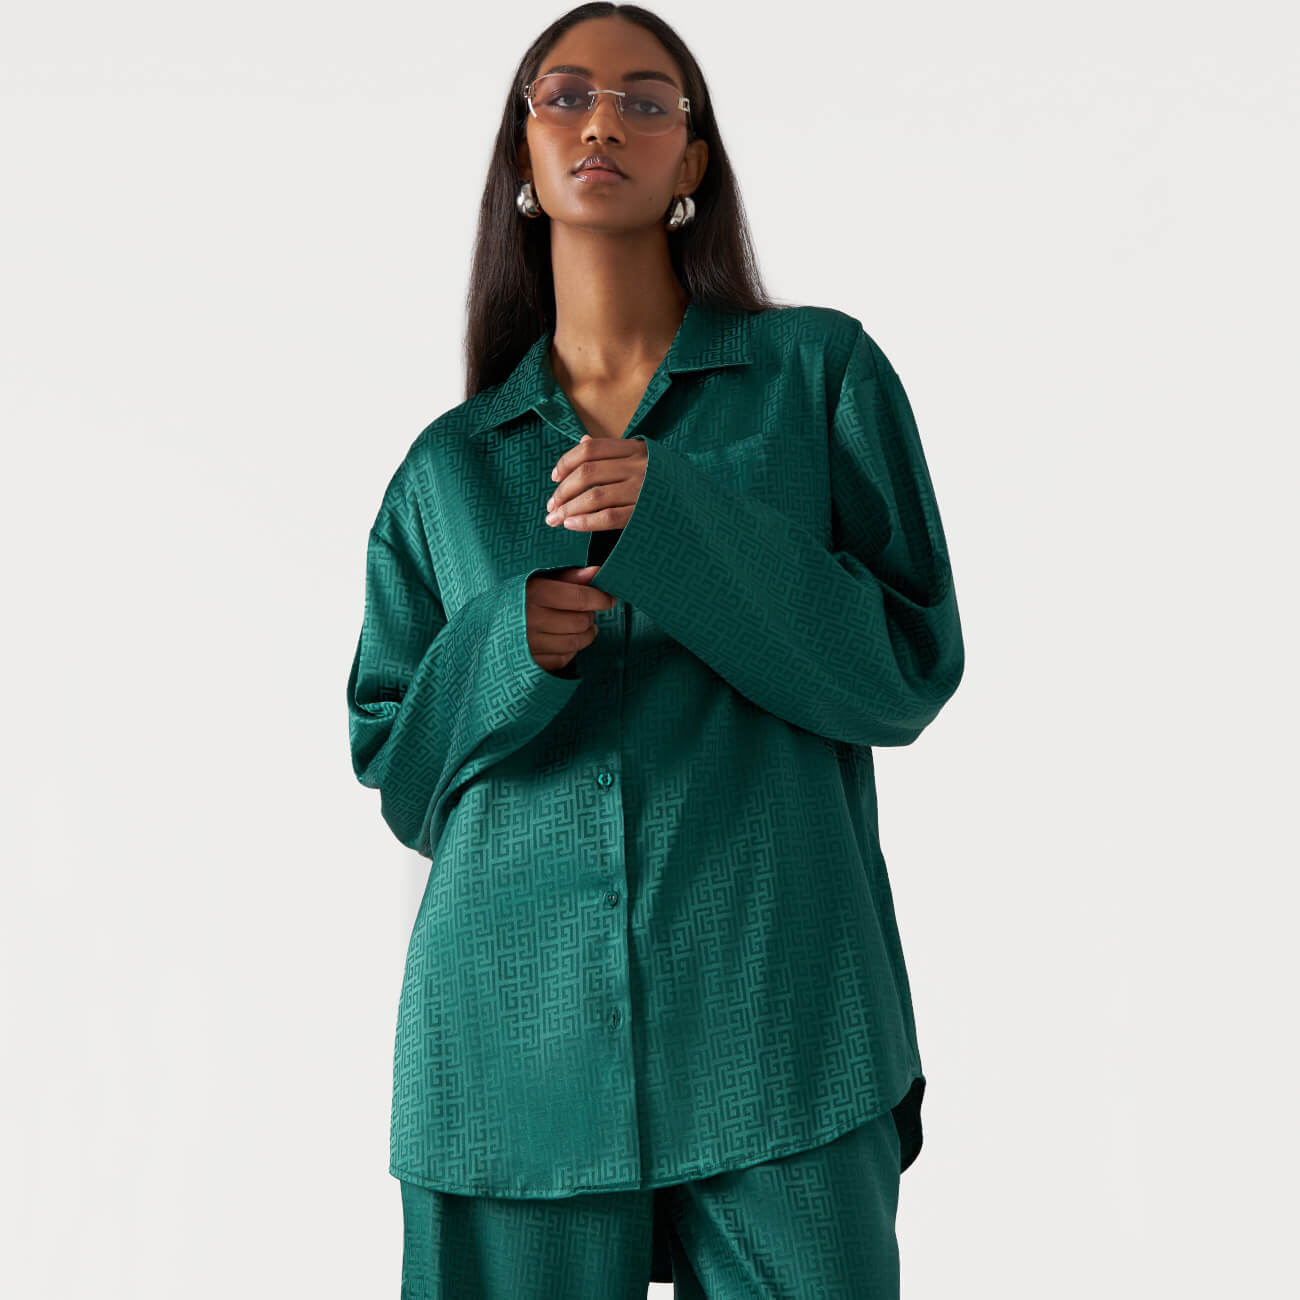 Рубашка женская, р. S, с длинным рукавом, полиэстер, зеленая, Жаккардовый узор, Agnia пижама женская